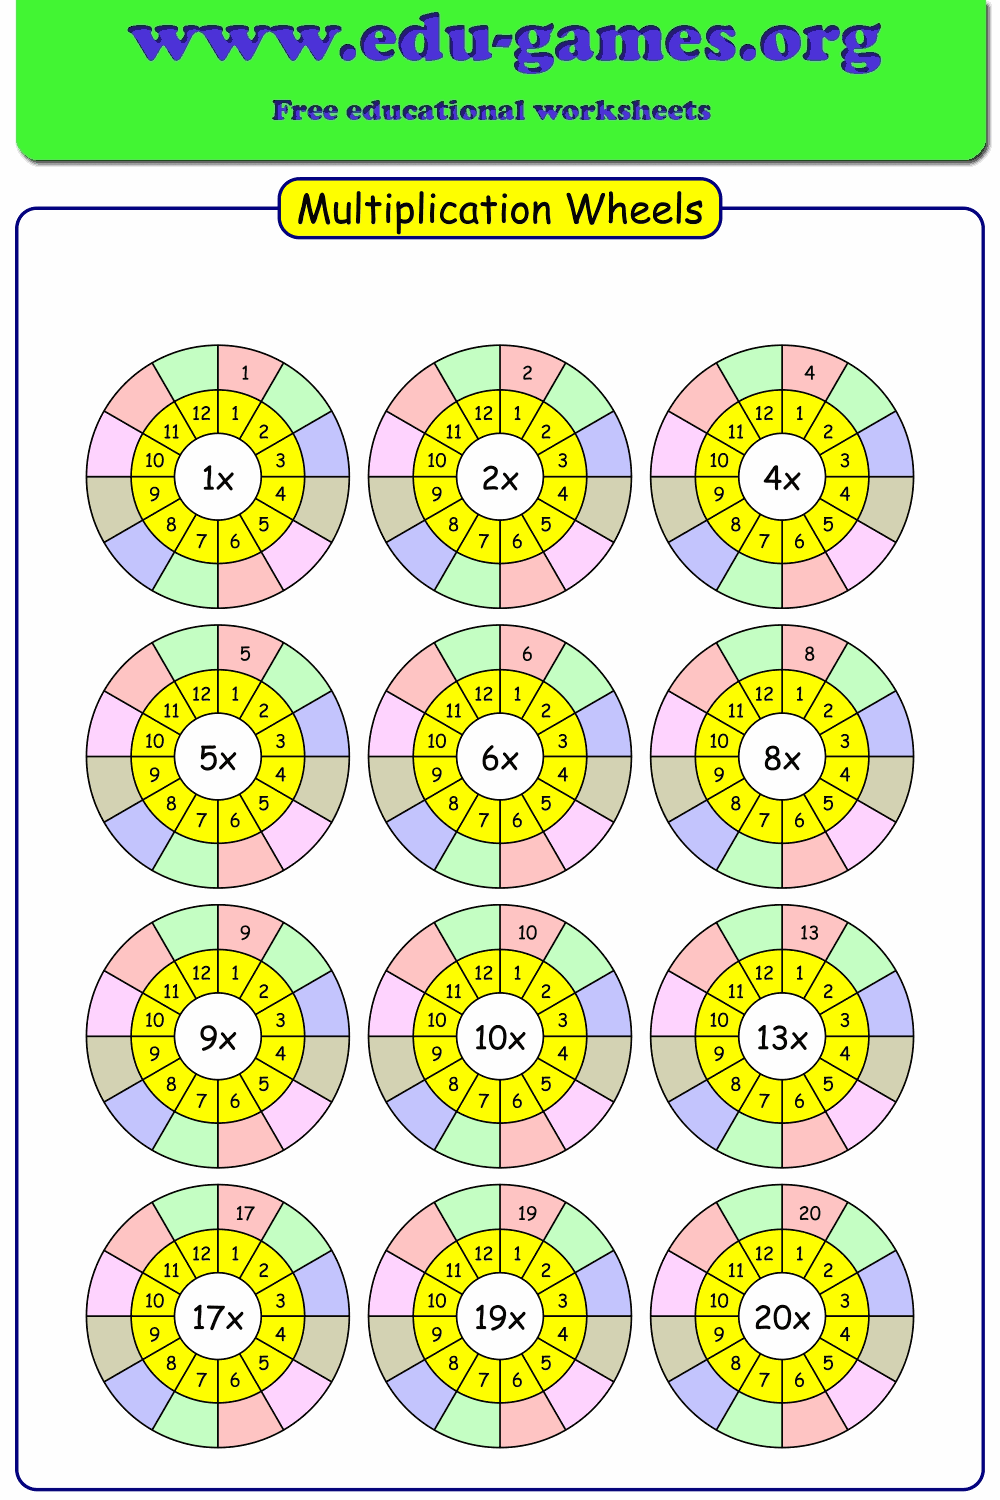 Multiplication Wheels Worksheets Free Printable Worksheets